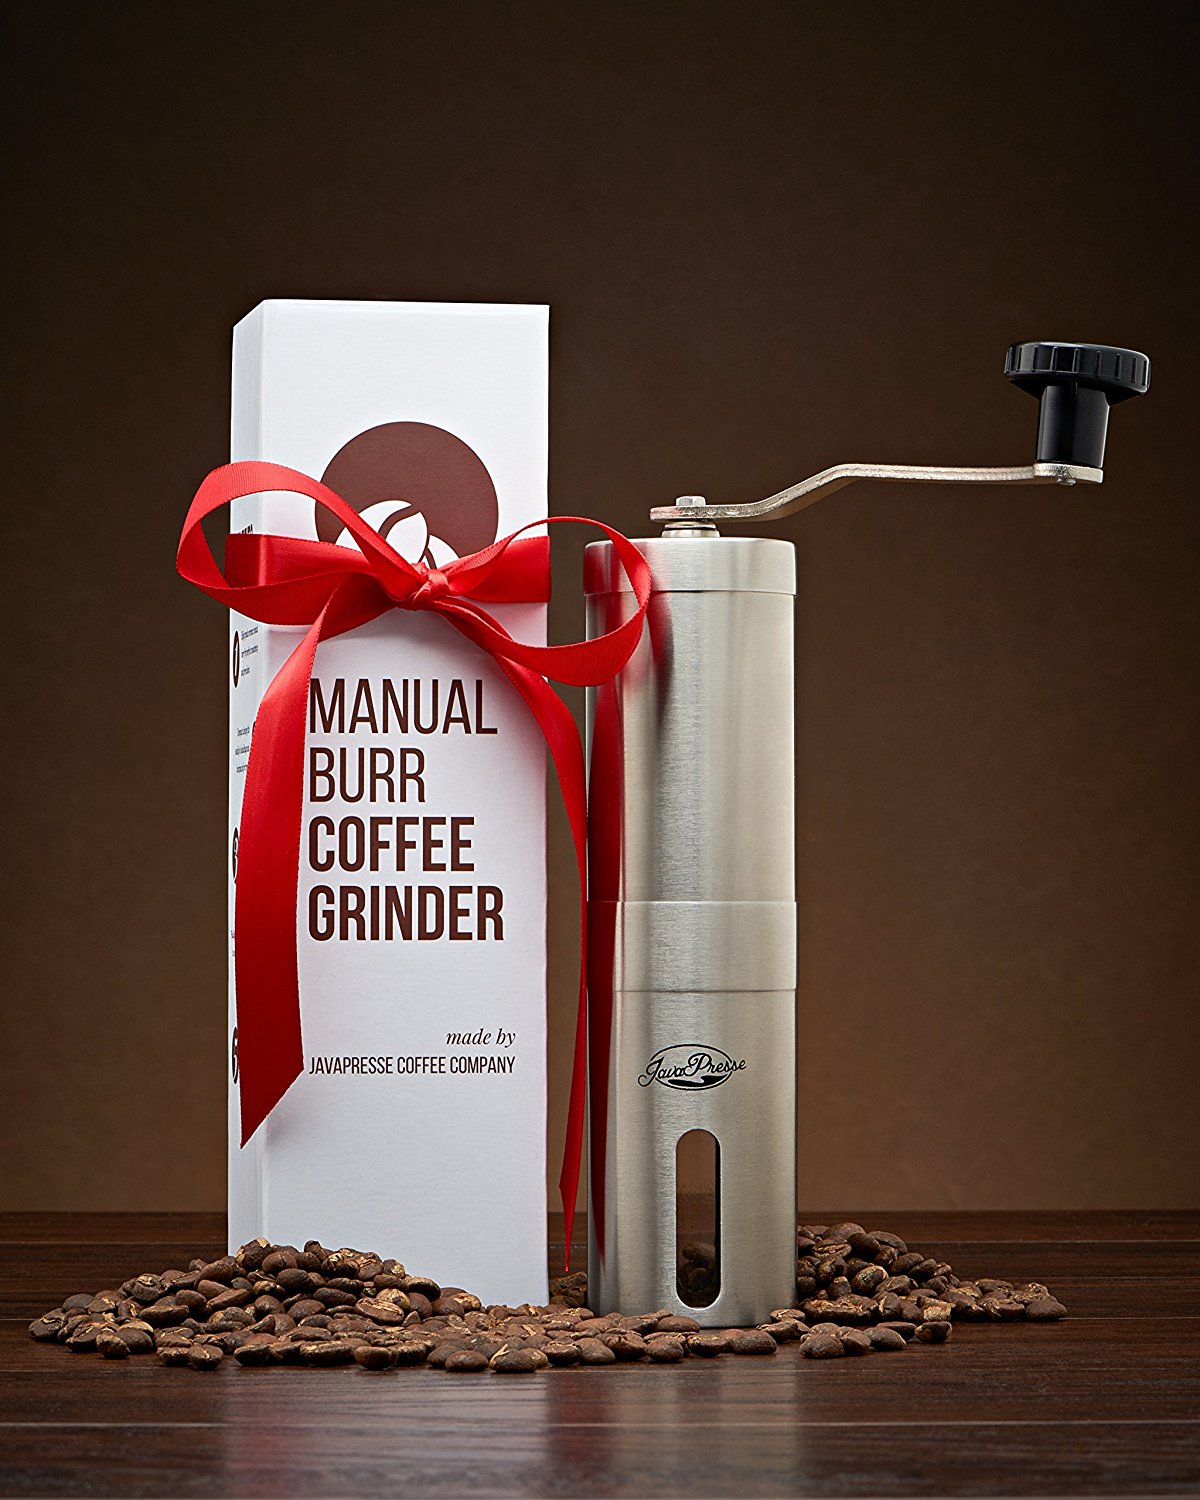 Built-In Grinders In Coffee Makers - JavaPresse Coffee Company